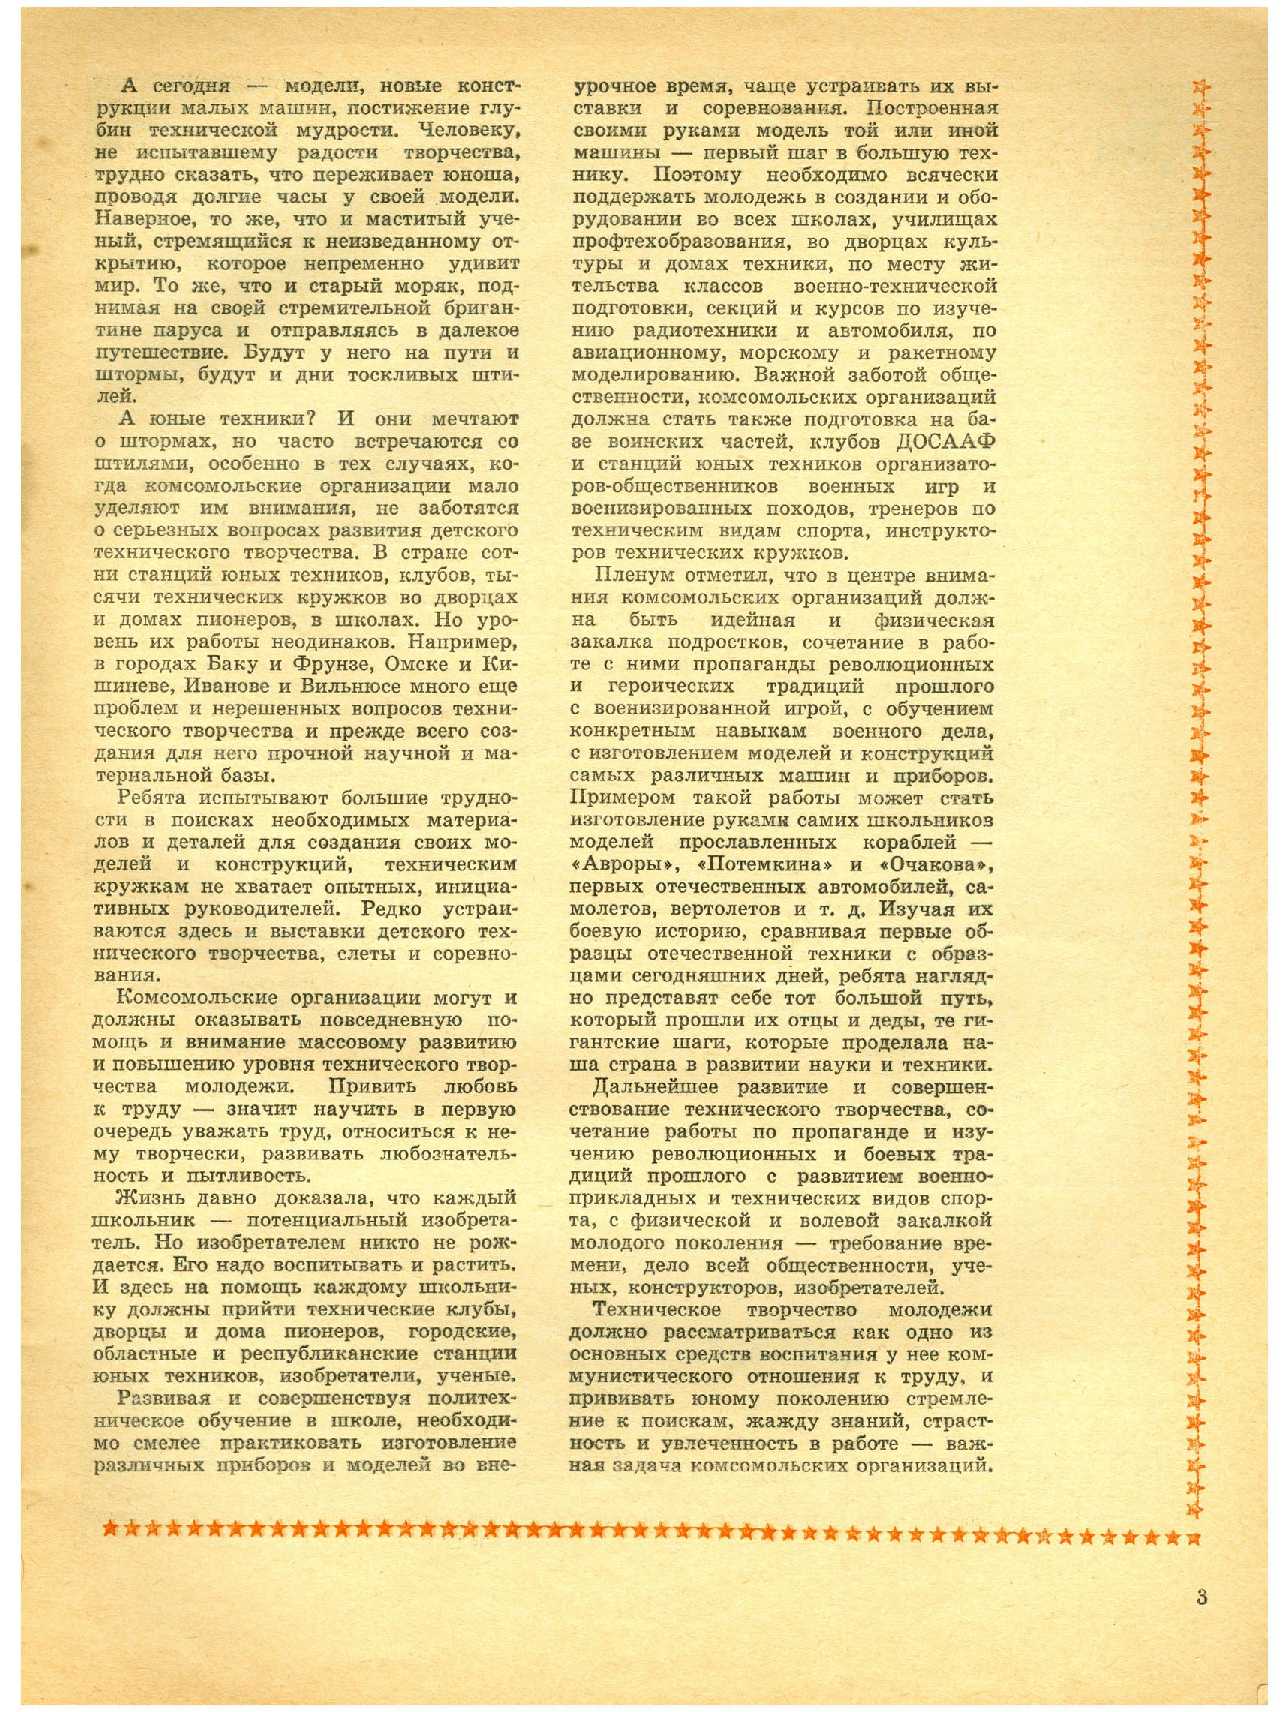 МК 4, 1966, 3 c.